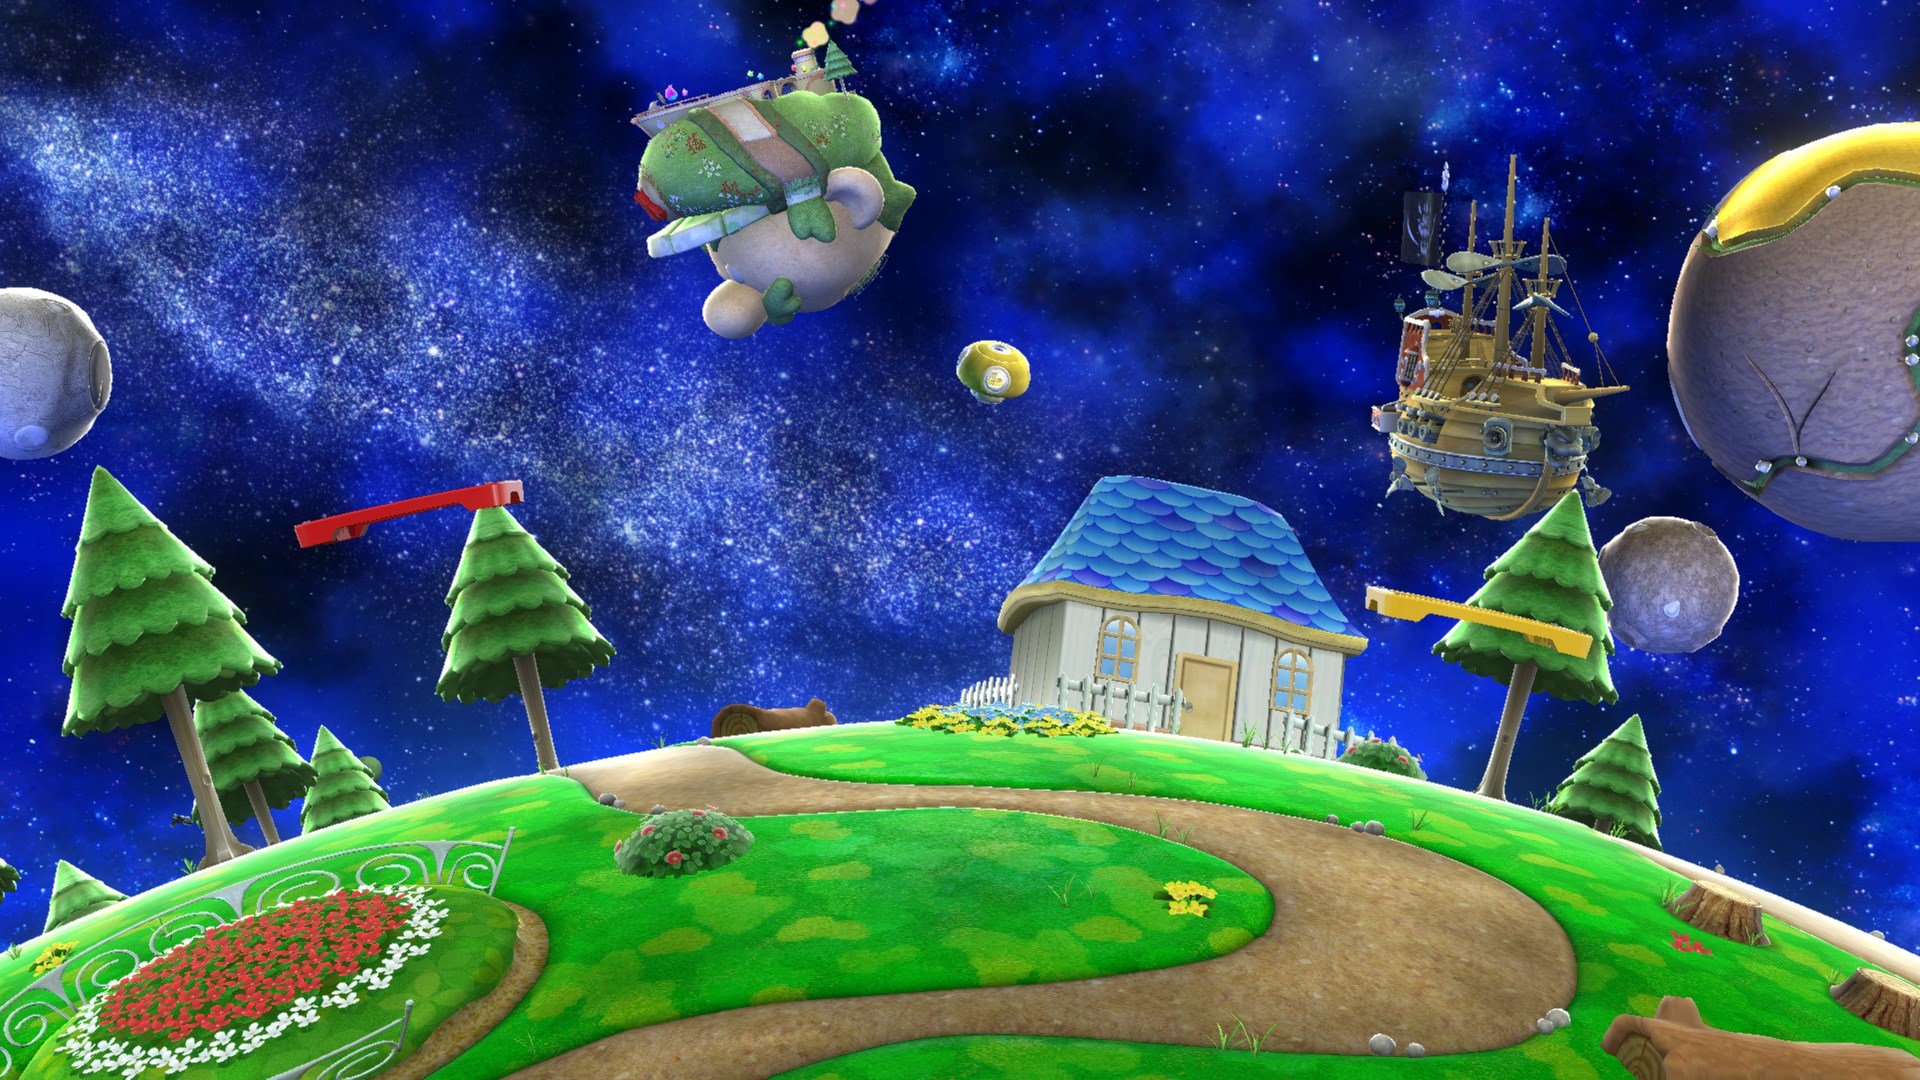 Nintendo DS (universe) - SmashWiki, the Super Smash Bros. wiki